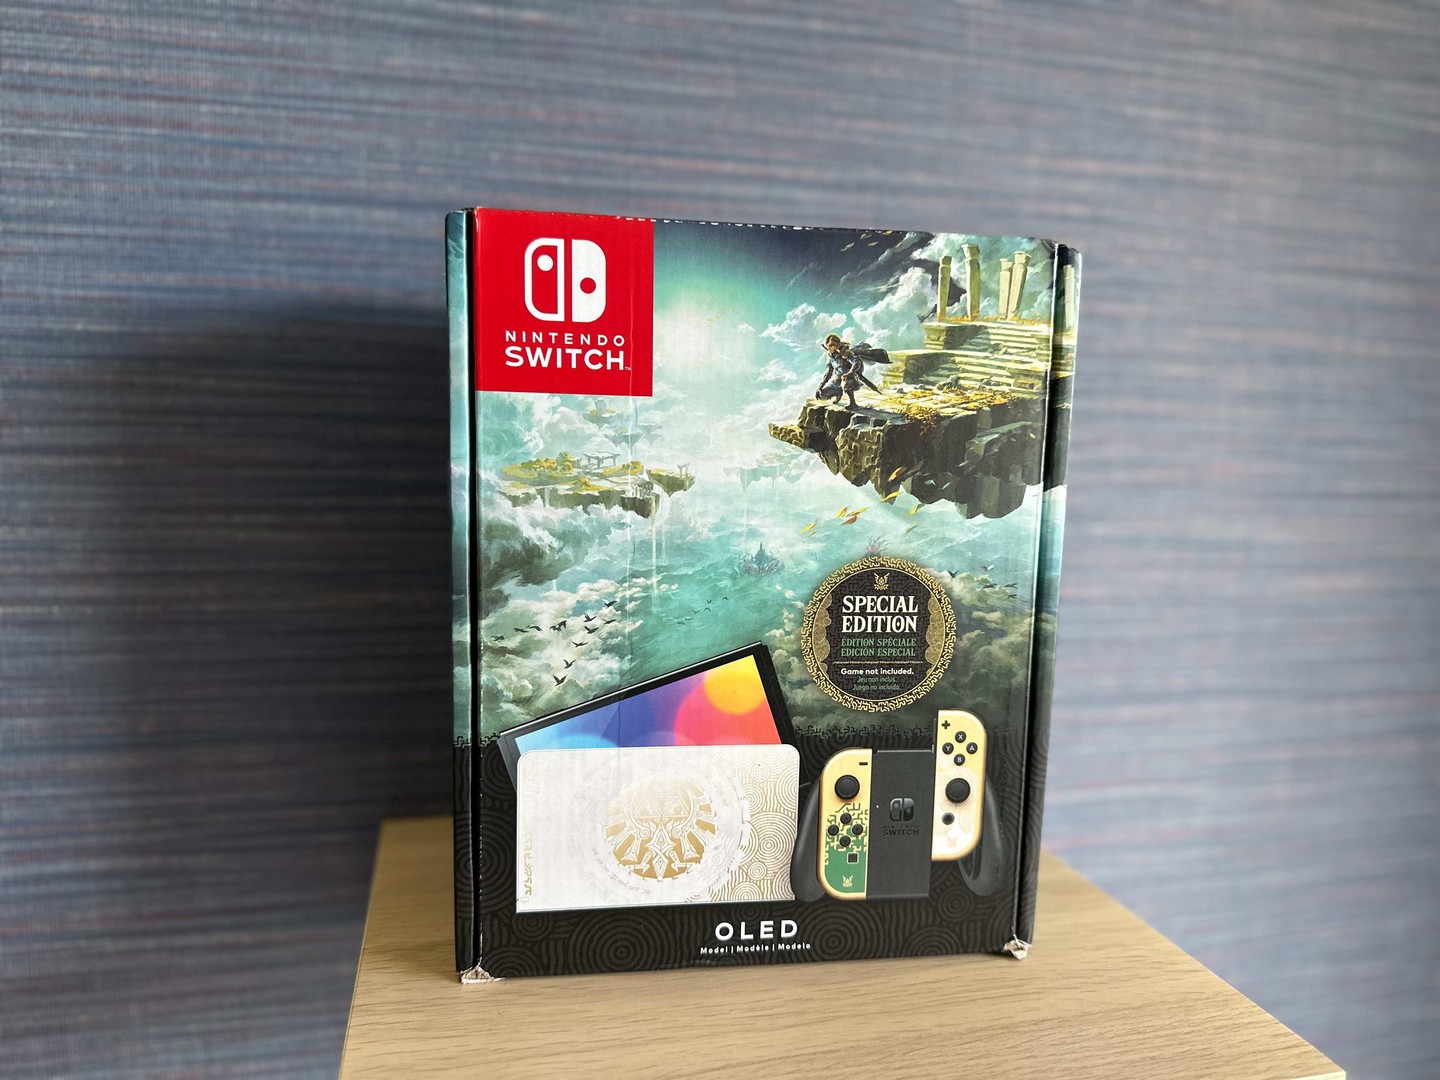 consolas y videojuegos - Vendo Consola Nintendo Switch OLED Zelda Edition Nuevos , Garantía $ 20,500 NEG 0